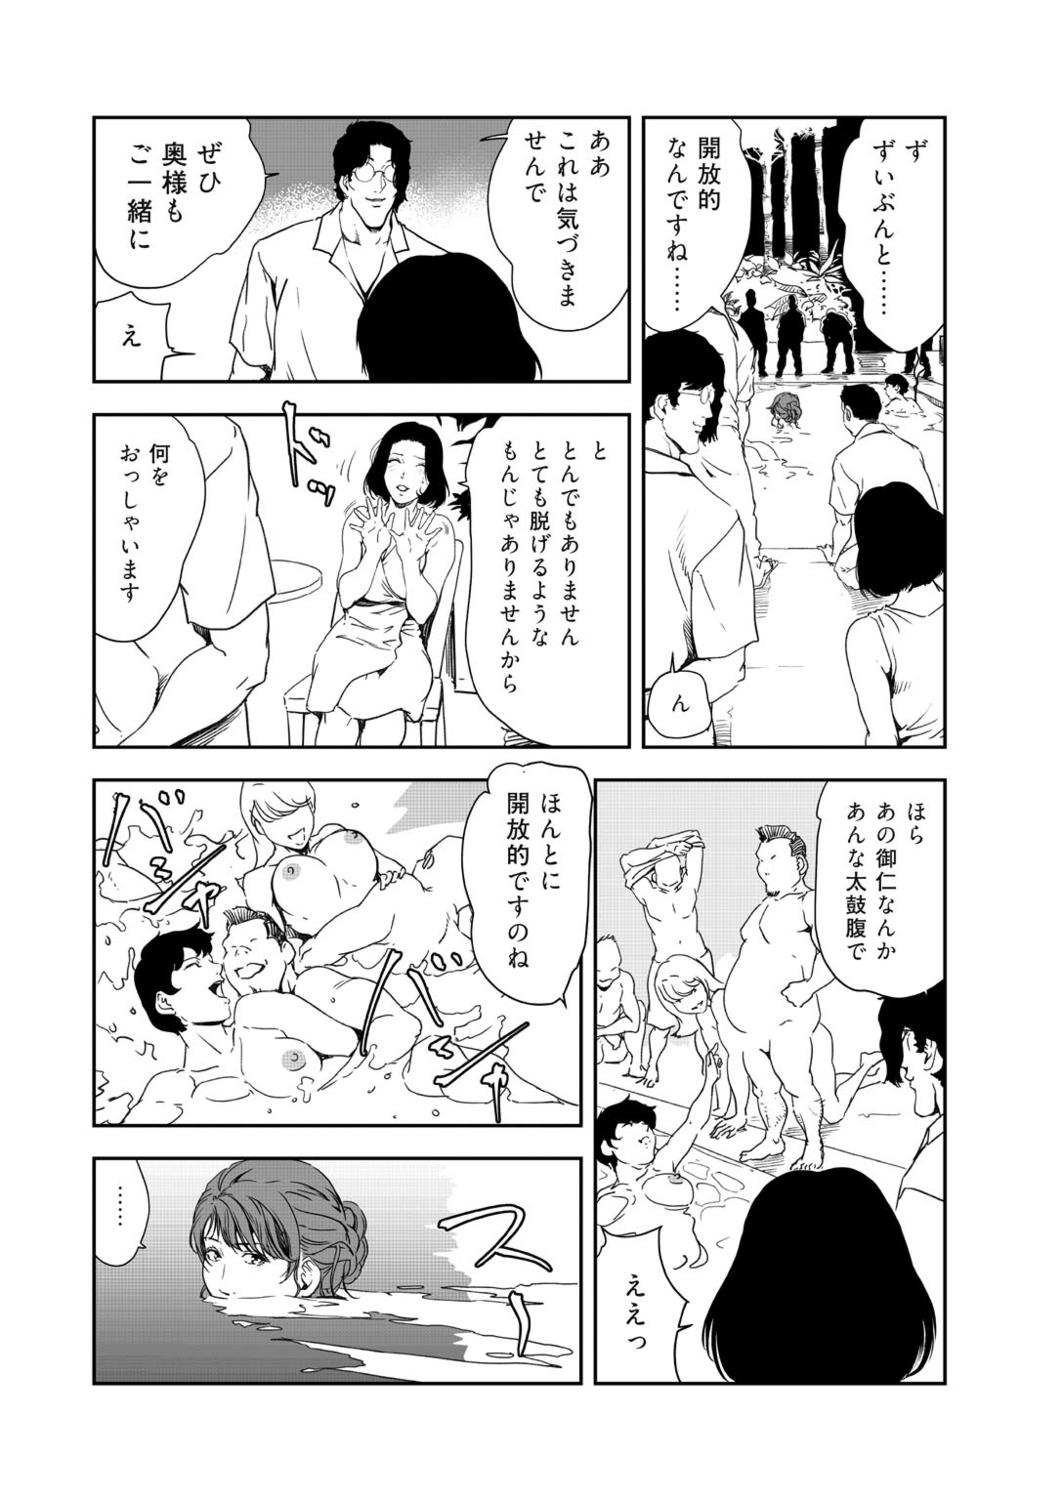 Nasty Free Porn Nikuhisyo Yukiko 41 Sfm - Page 14